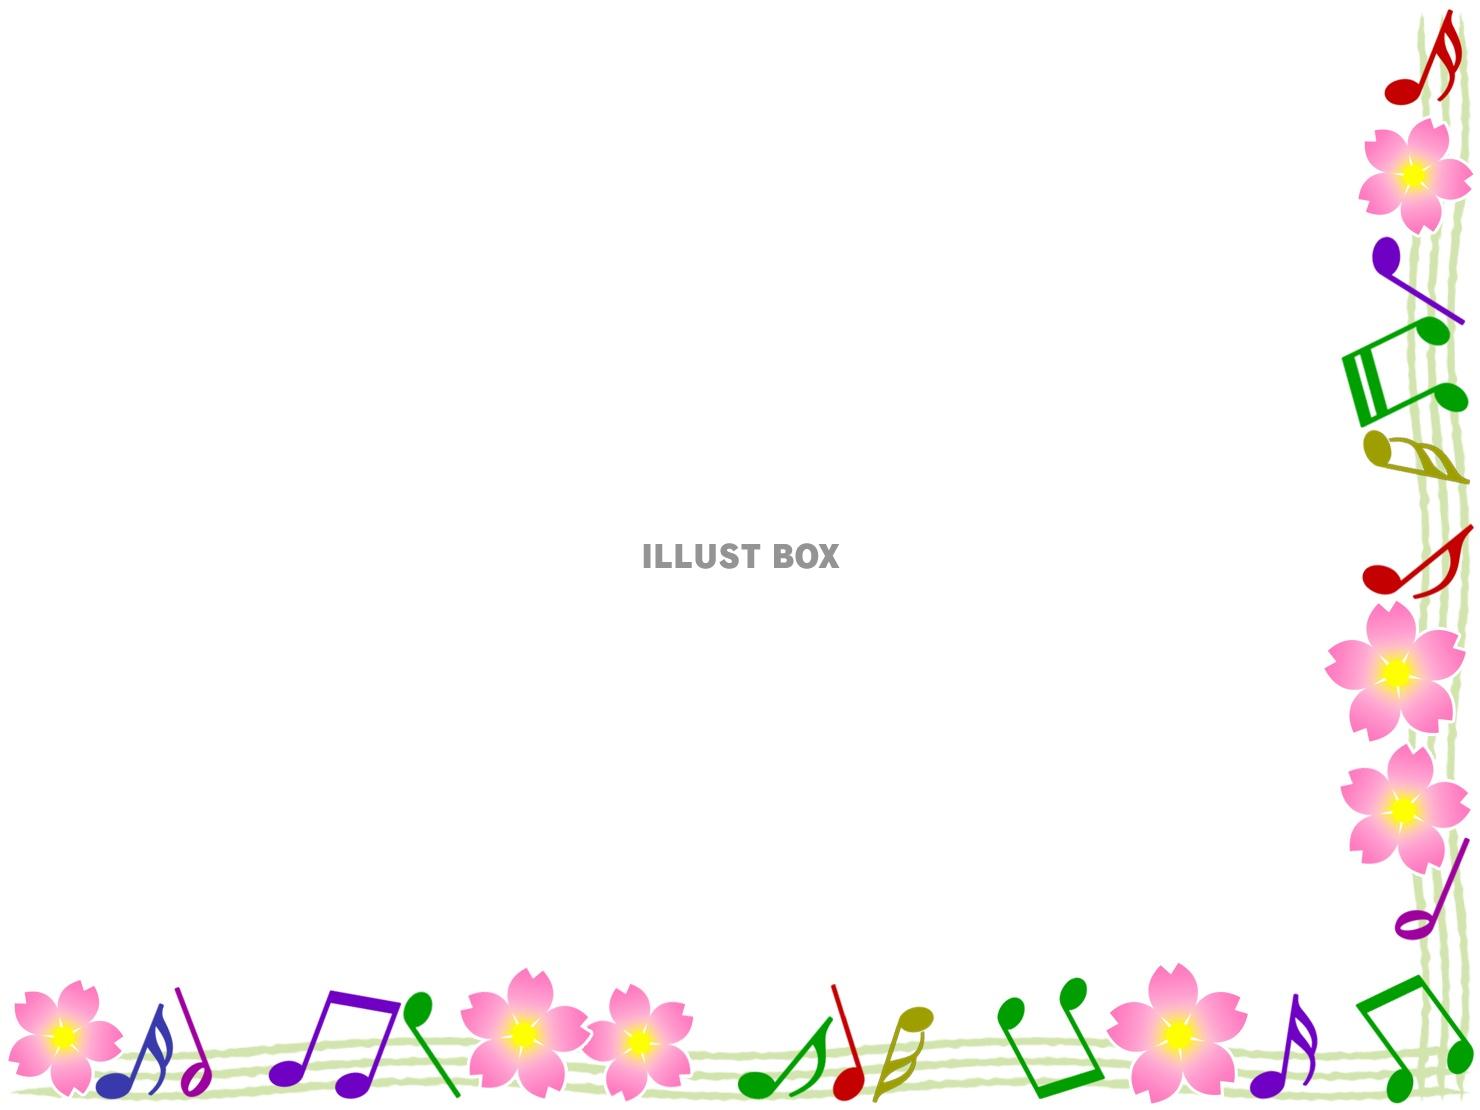 音符と桜の花模様の音楽フレーム飾り枠